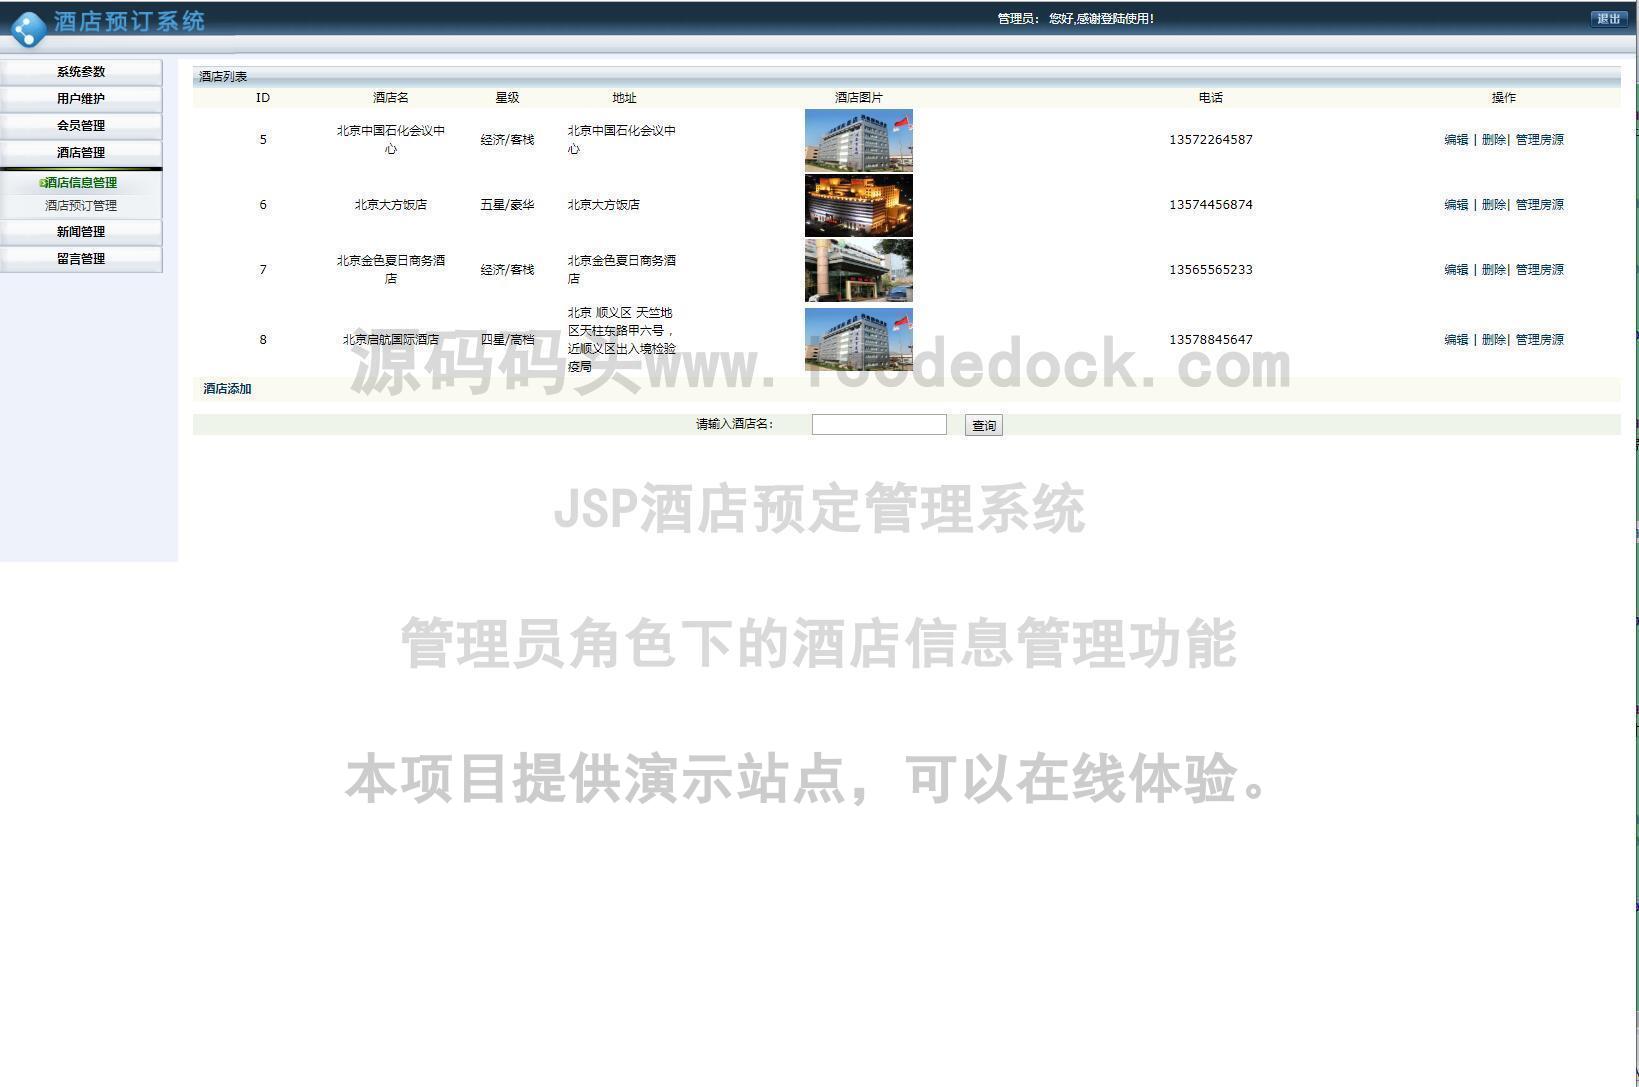 源码码头-JSP酒店预定管理系统-管理员角色-酒店信息管理